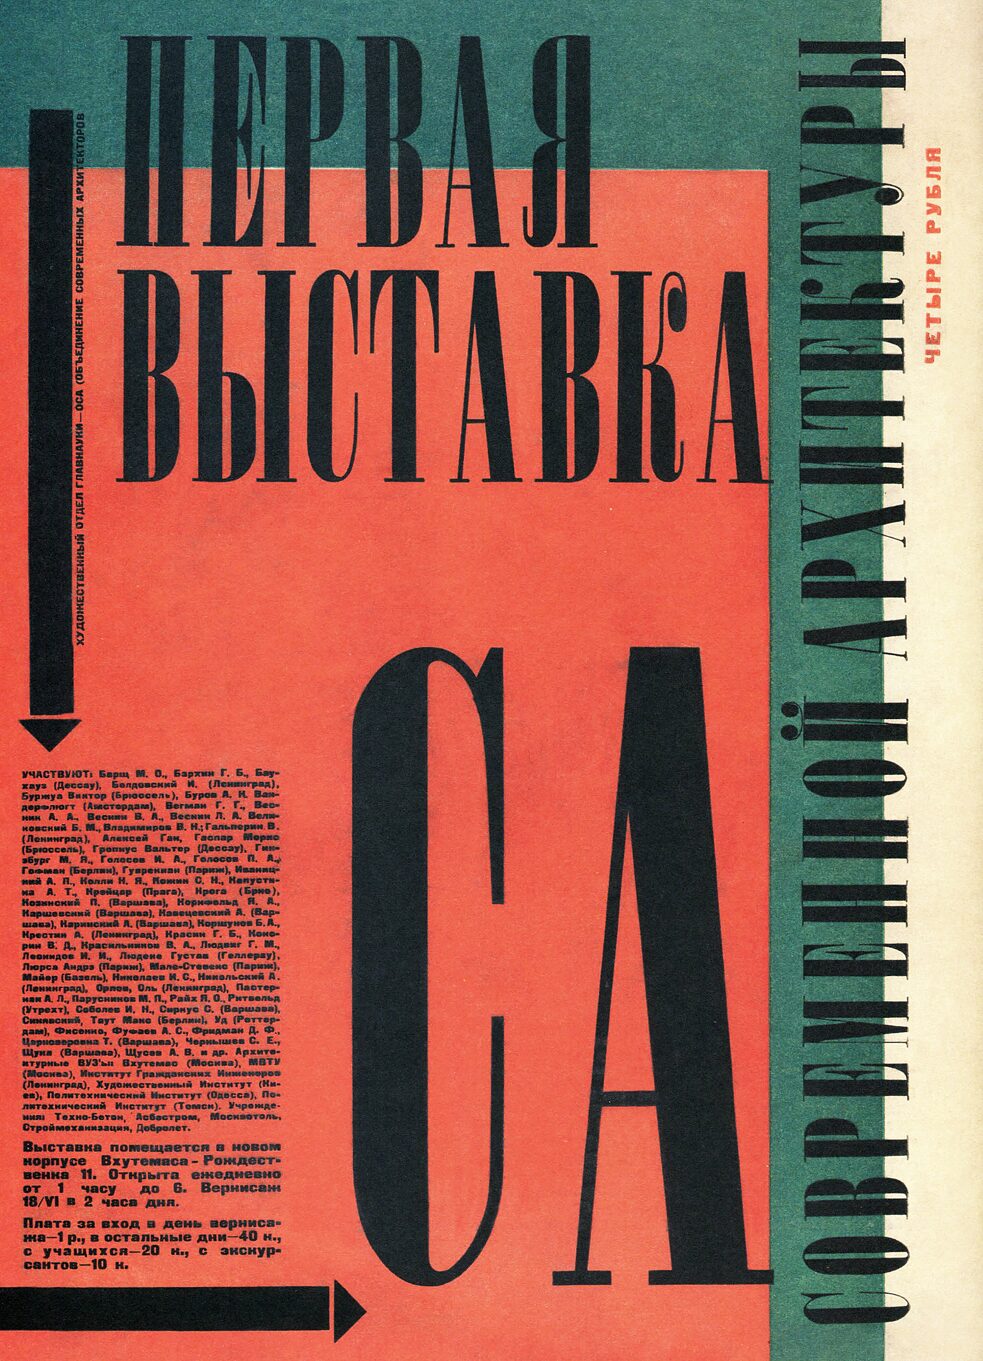 Афиша Первой выставки современной архитектуры в Москве | А. Ган, 1927